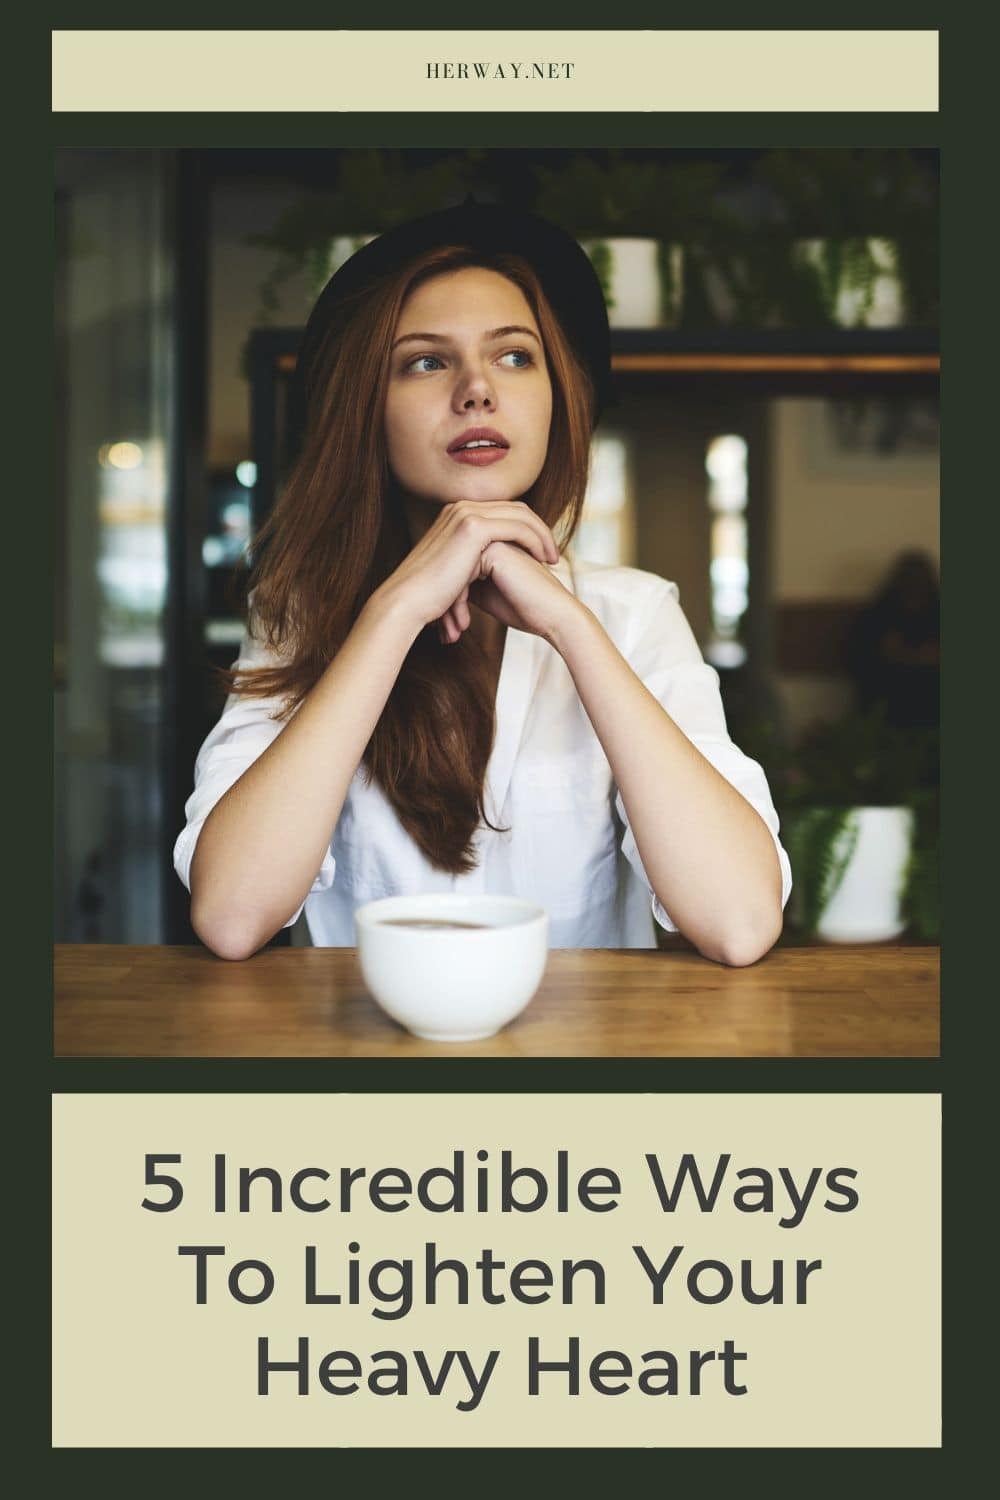 5 modi incredibili per alleggerire il vostro cuore pesante